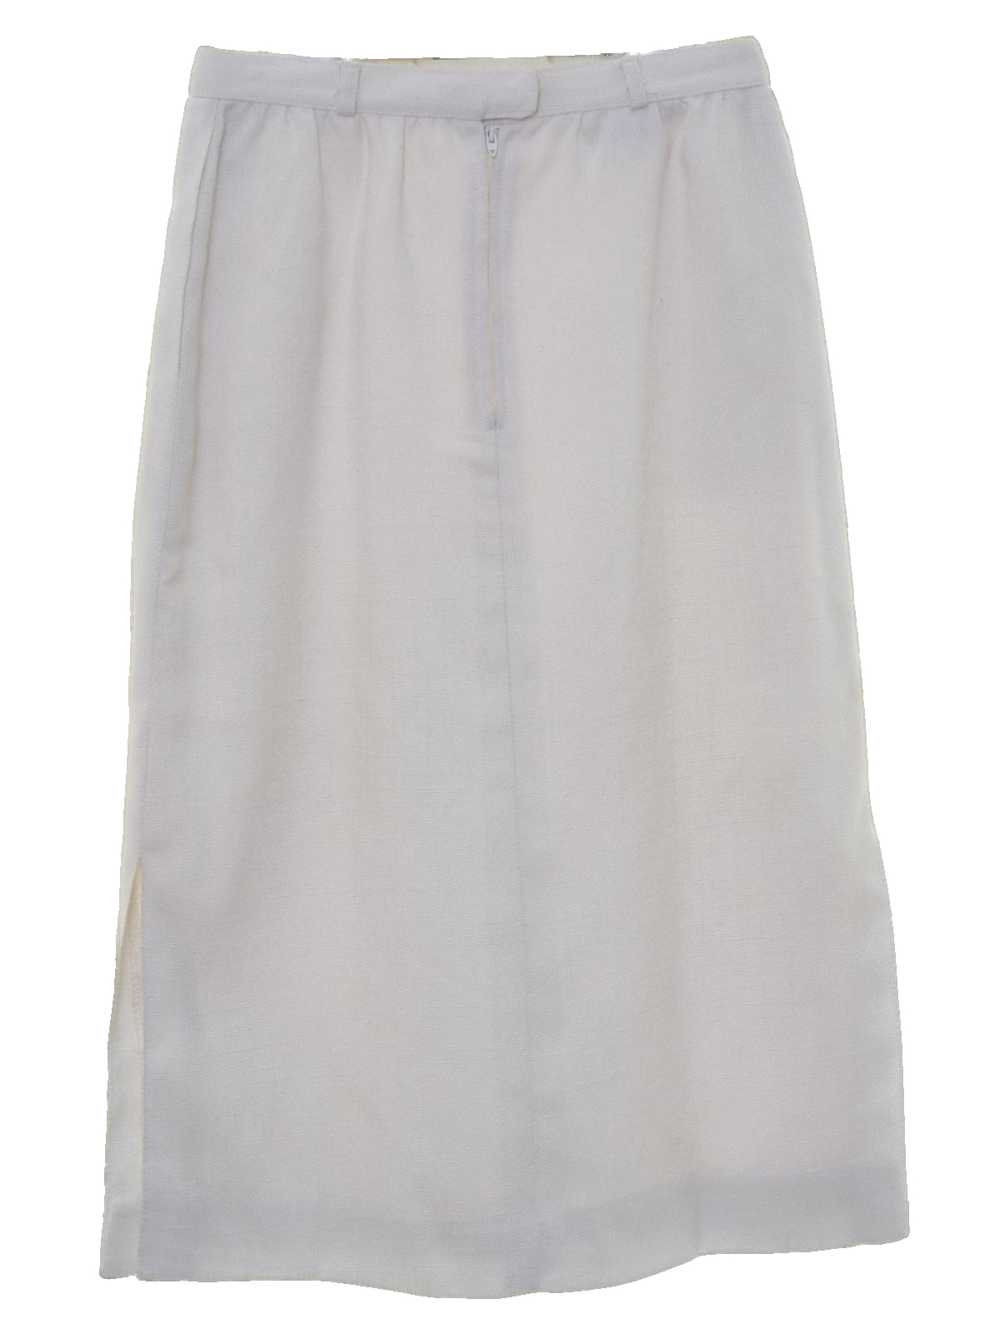 1980's JH Skirt - image 3